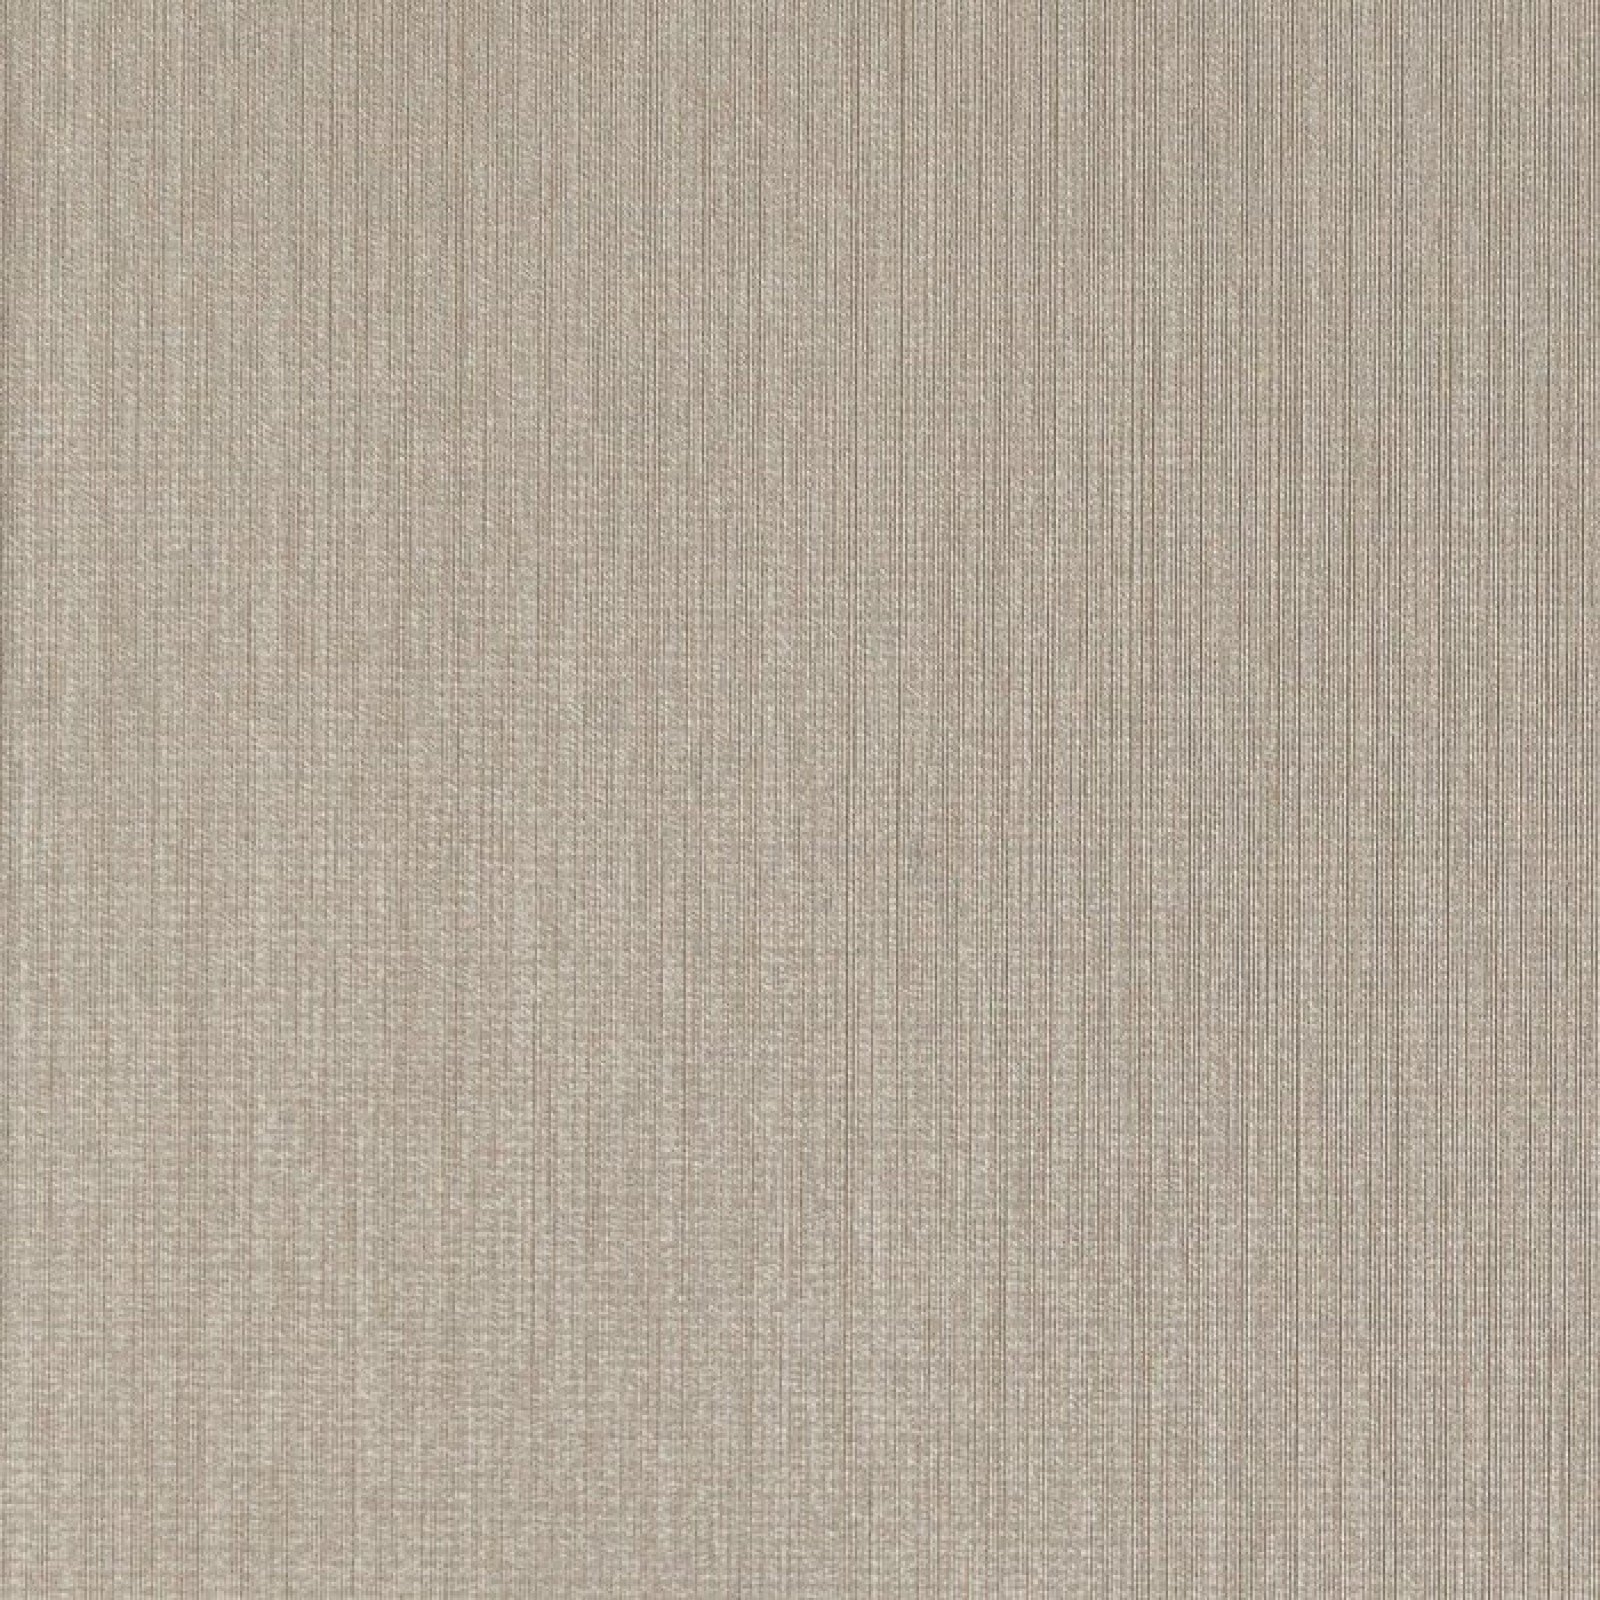 oboi-078779-rasch-textil-lyra